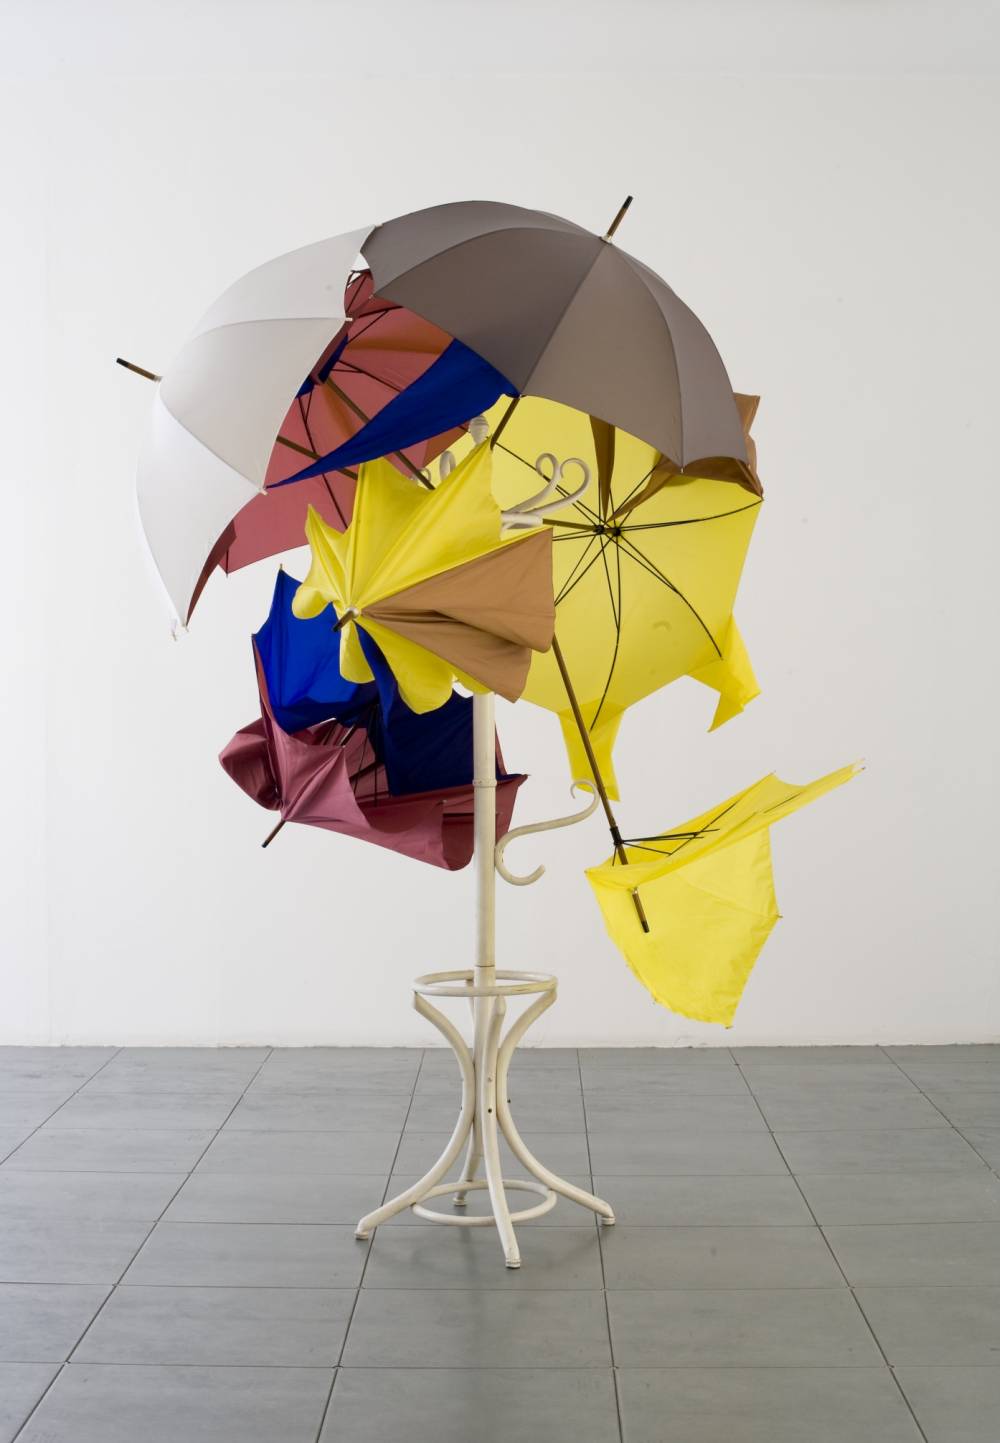 Simone Ruess, "Stojak na parasole" (2011/12), fot. dzięki uprzejmości galerii Le Guern